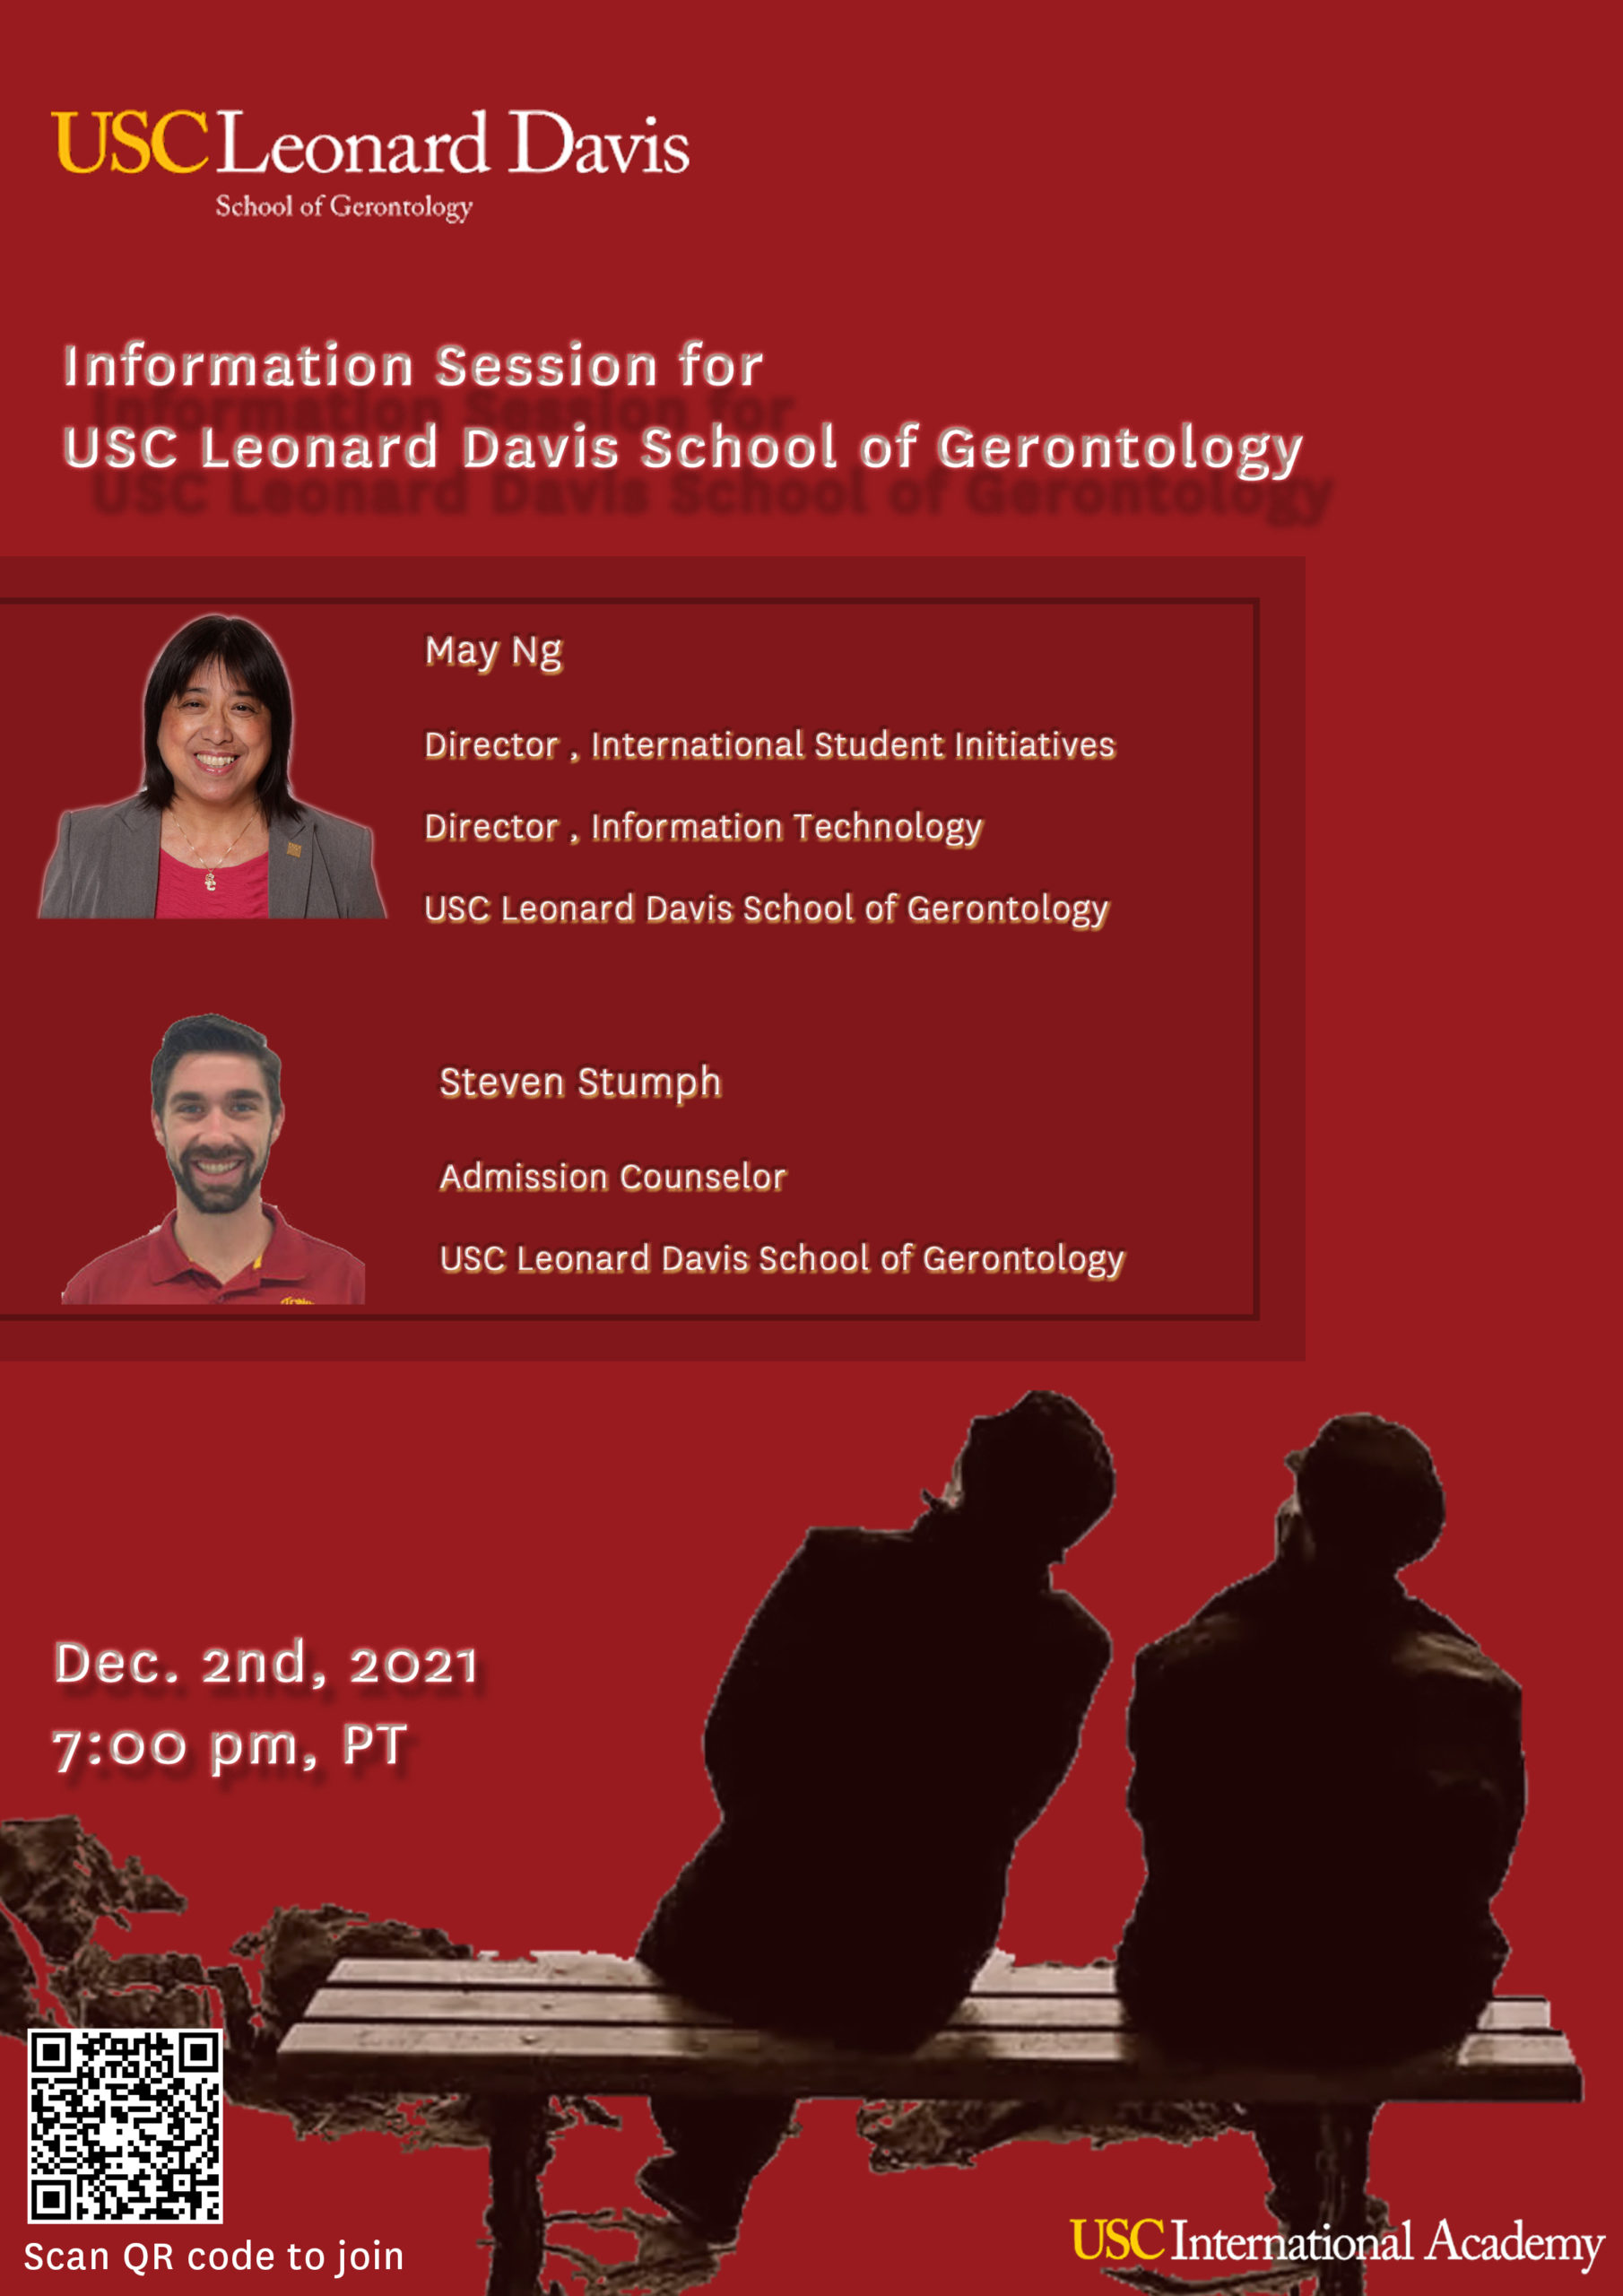 Information Session for USC Leonard Davis School of Gerontology